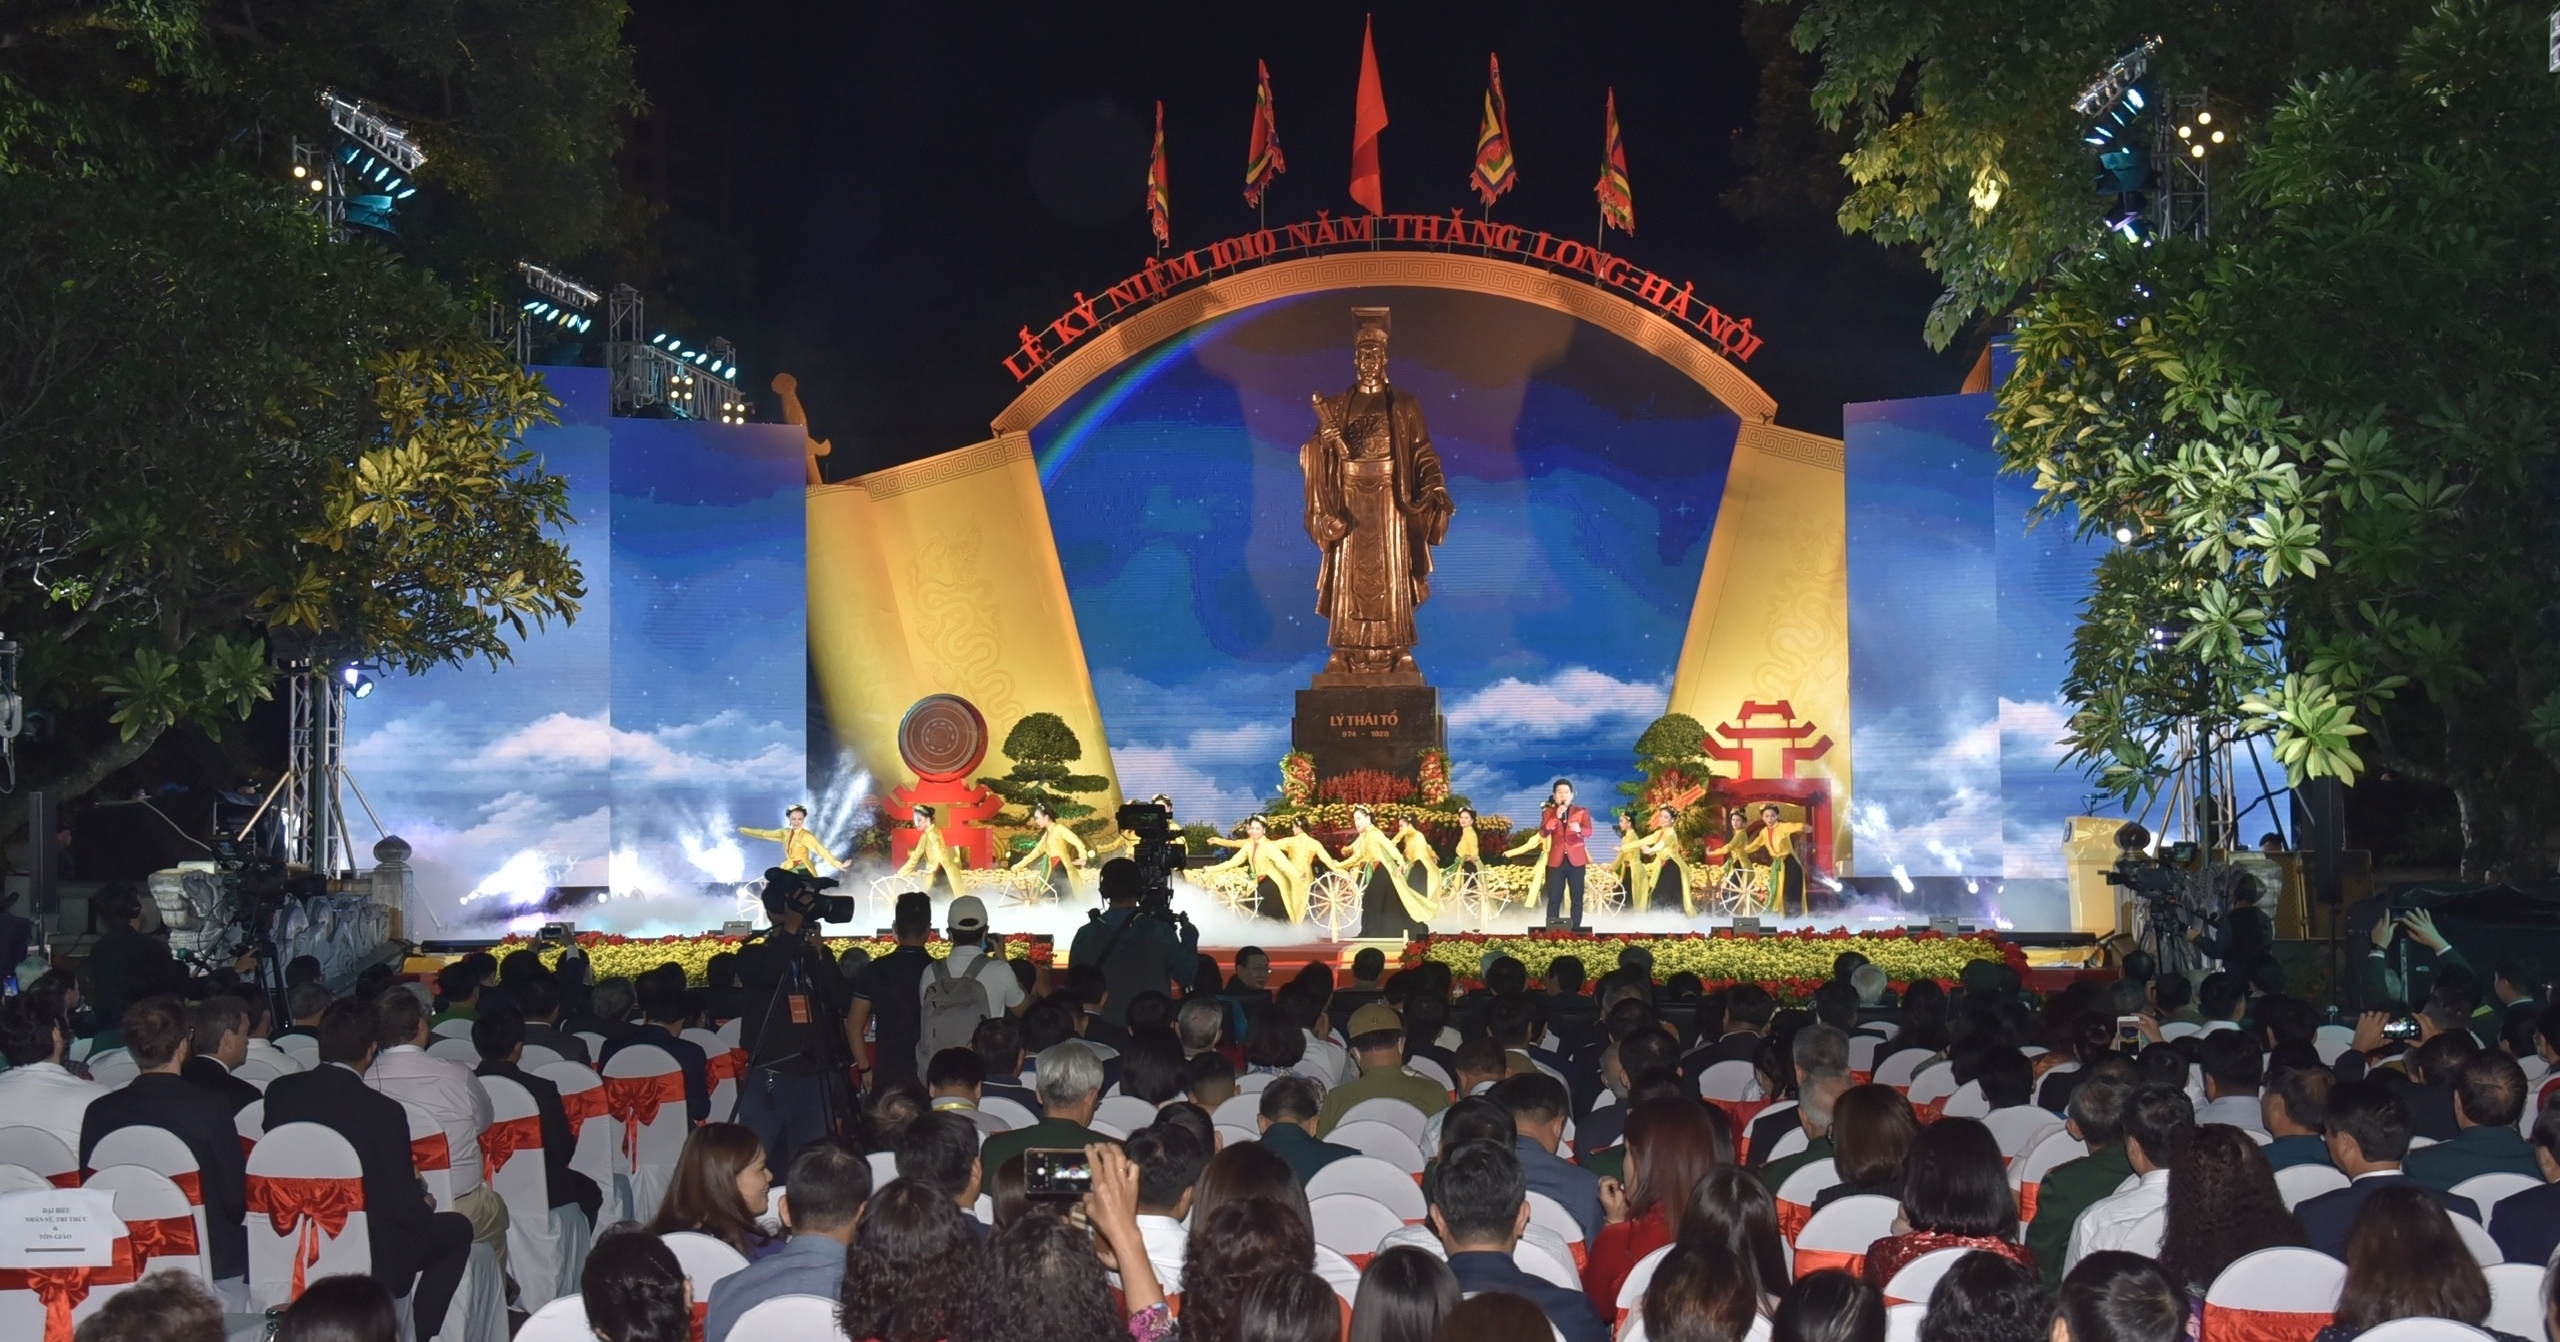 Hà Nội trọng thể tổ chức Lễ kỷ niệm 1010 năm Thăng Long - Hà Nội